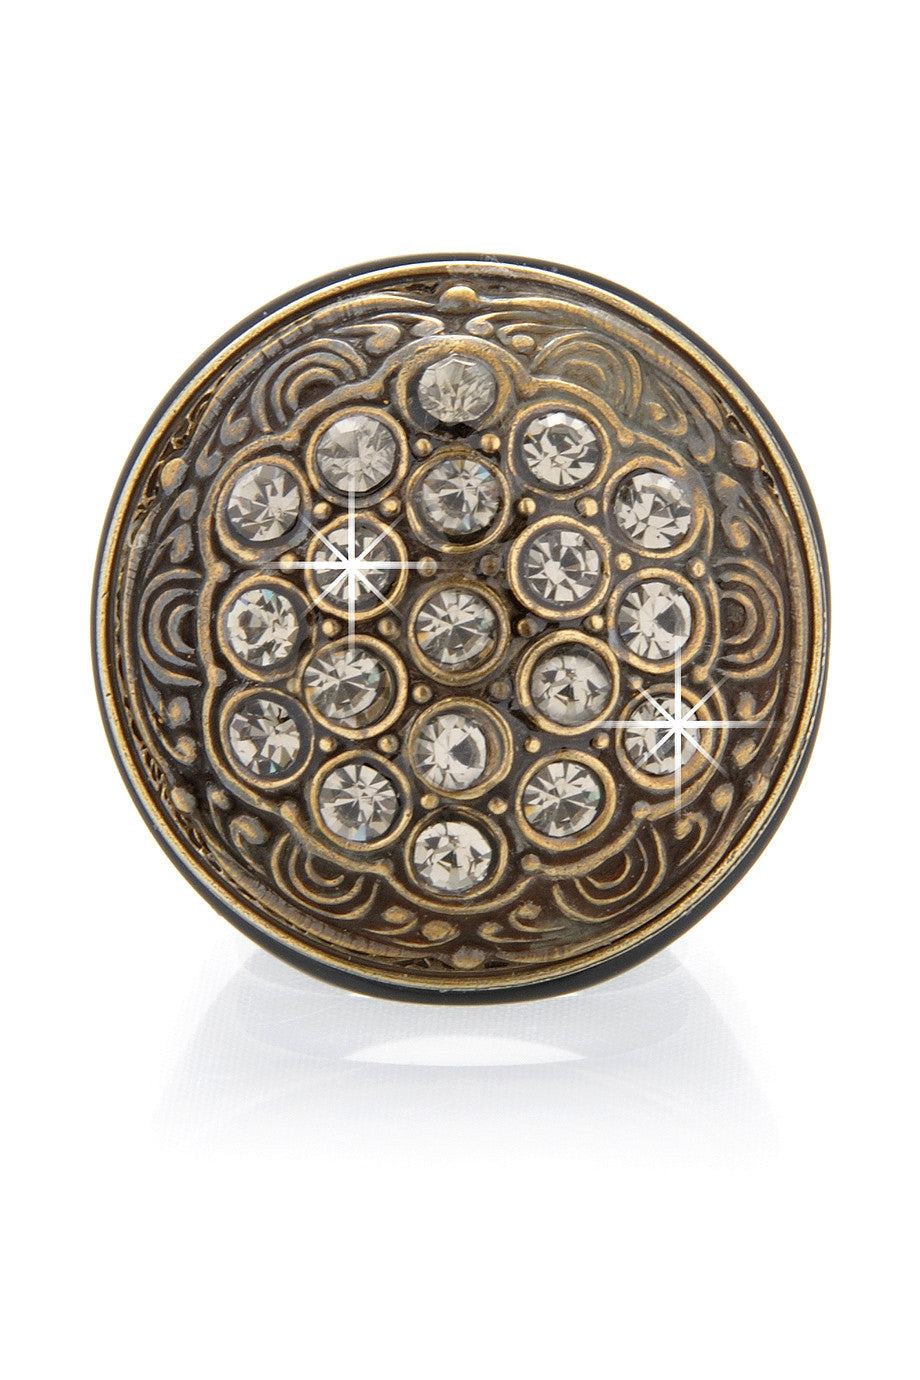 Μπρονζέ Δαχτυλίδι με Κρύσταλλα - Ringseclectic | Κοσμήματα